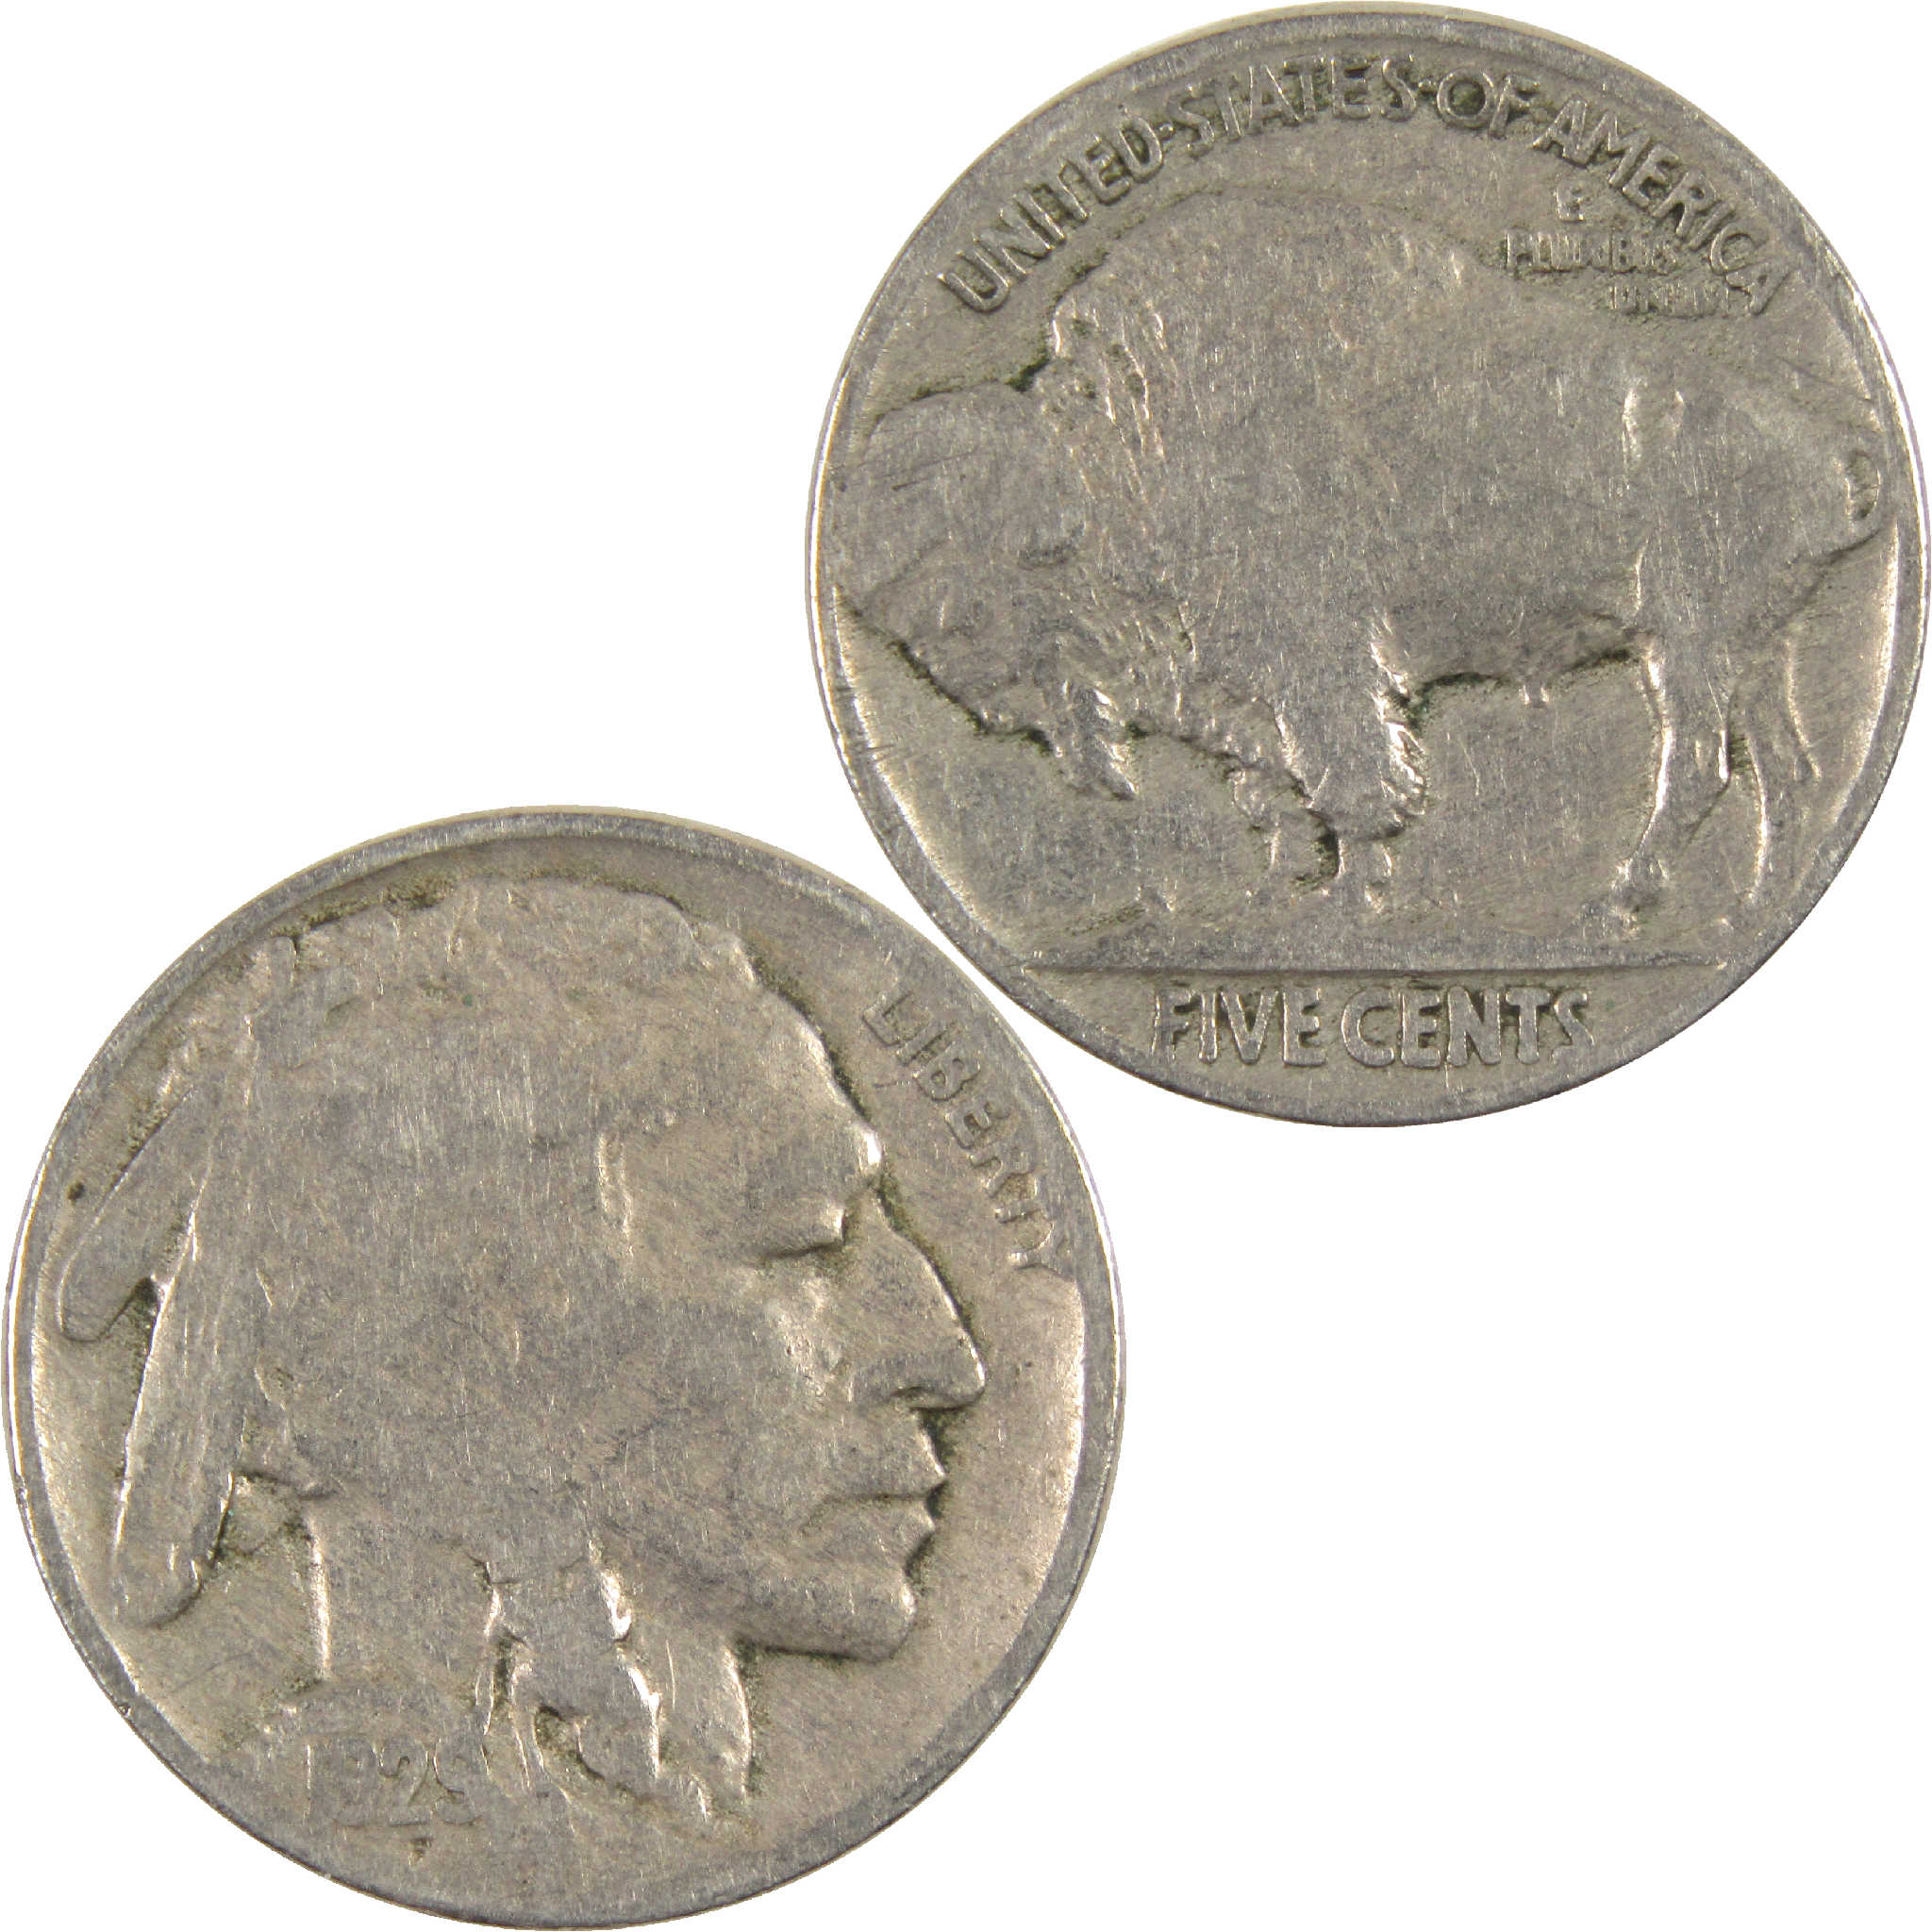 1929 Indian Head Buffalo Nickel G Good 5c Coin